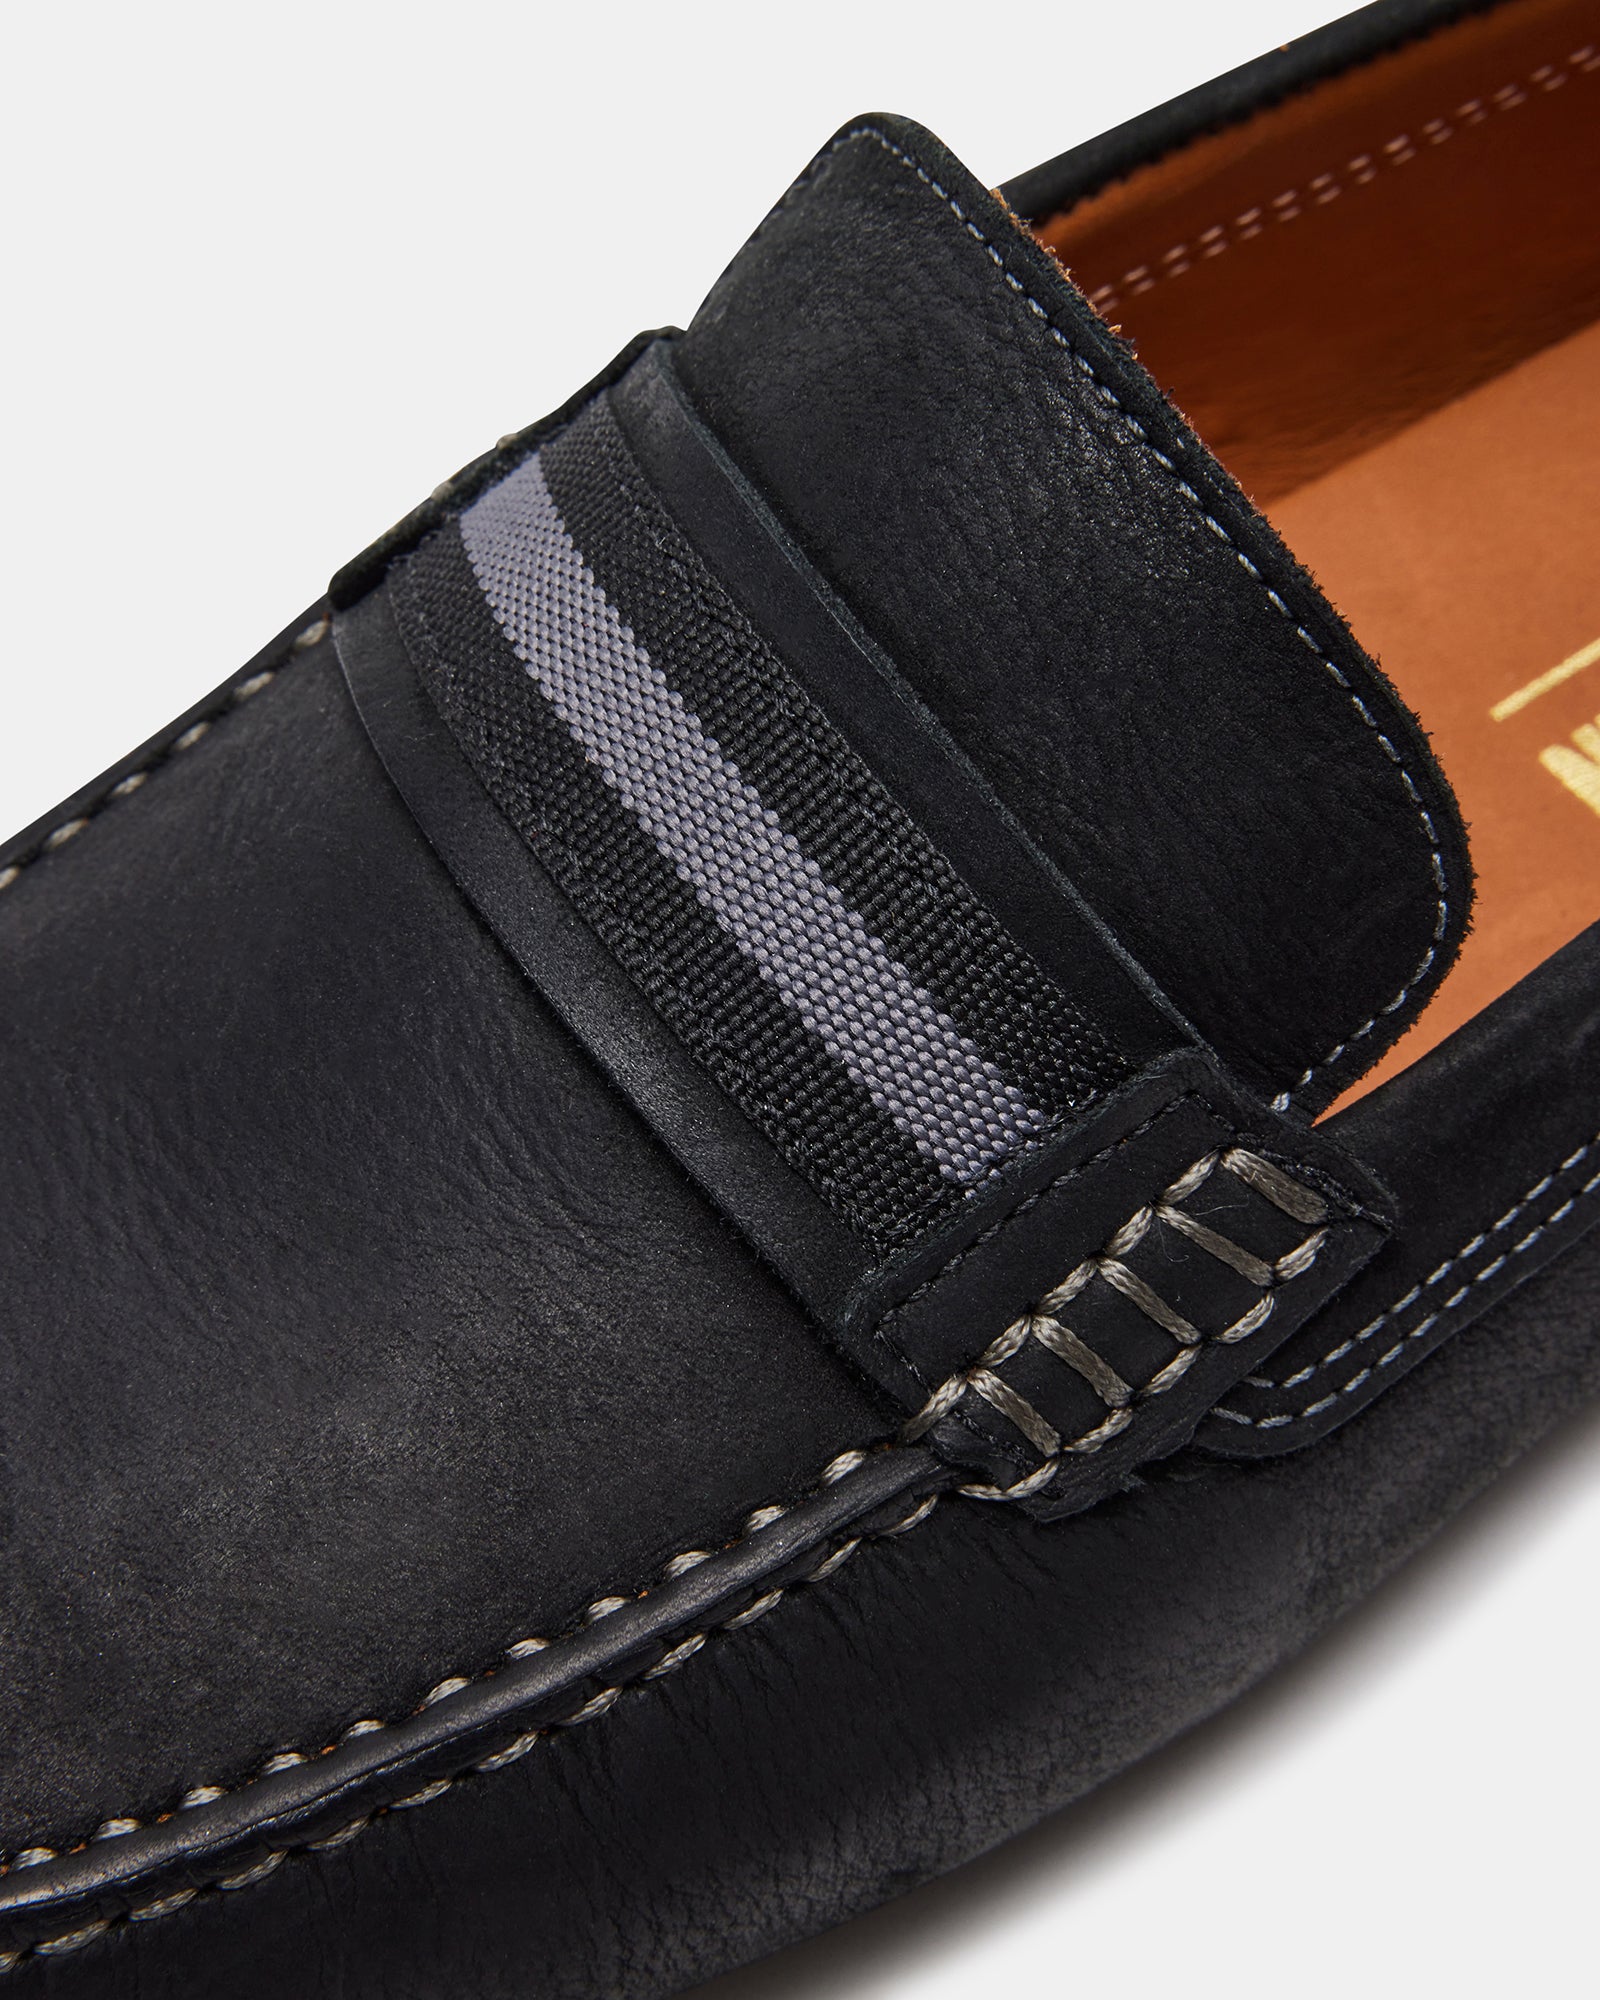 GAEL Black Leather Loafer | Men's Loafers – Steve Madden